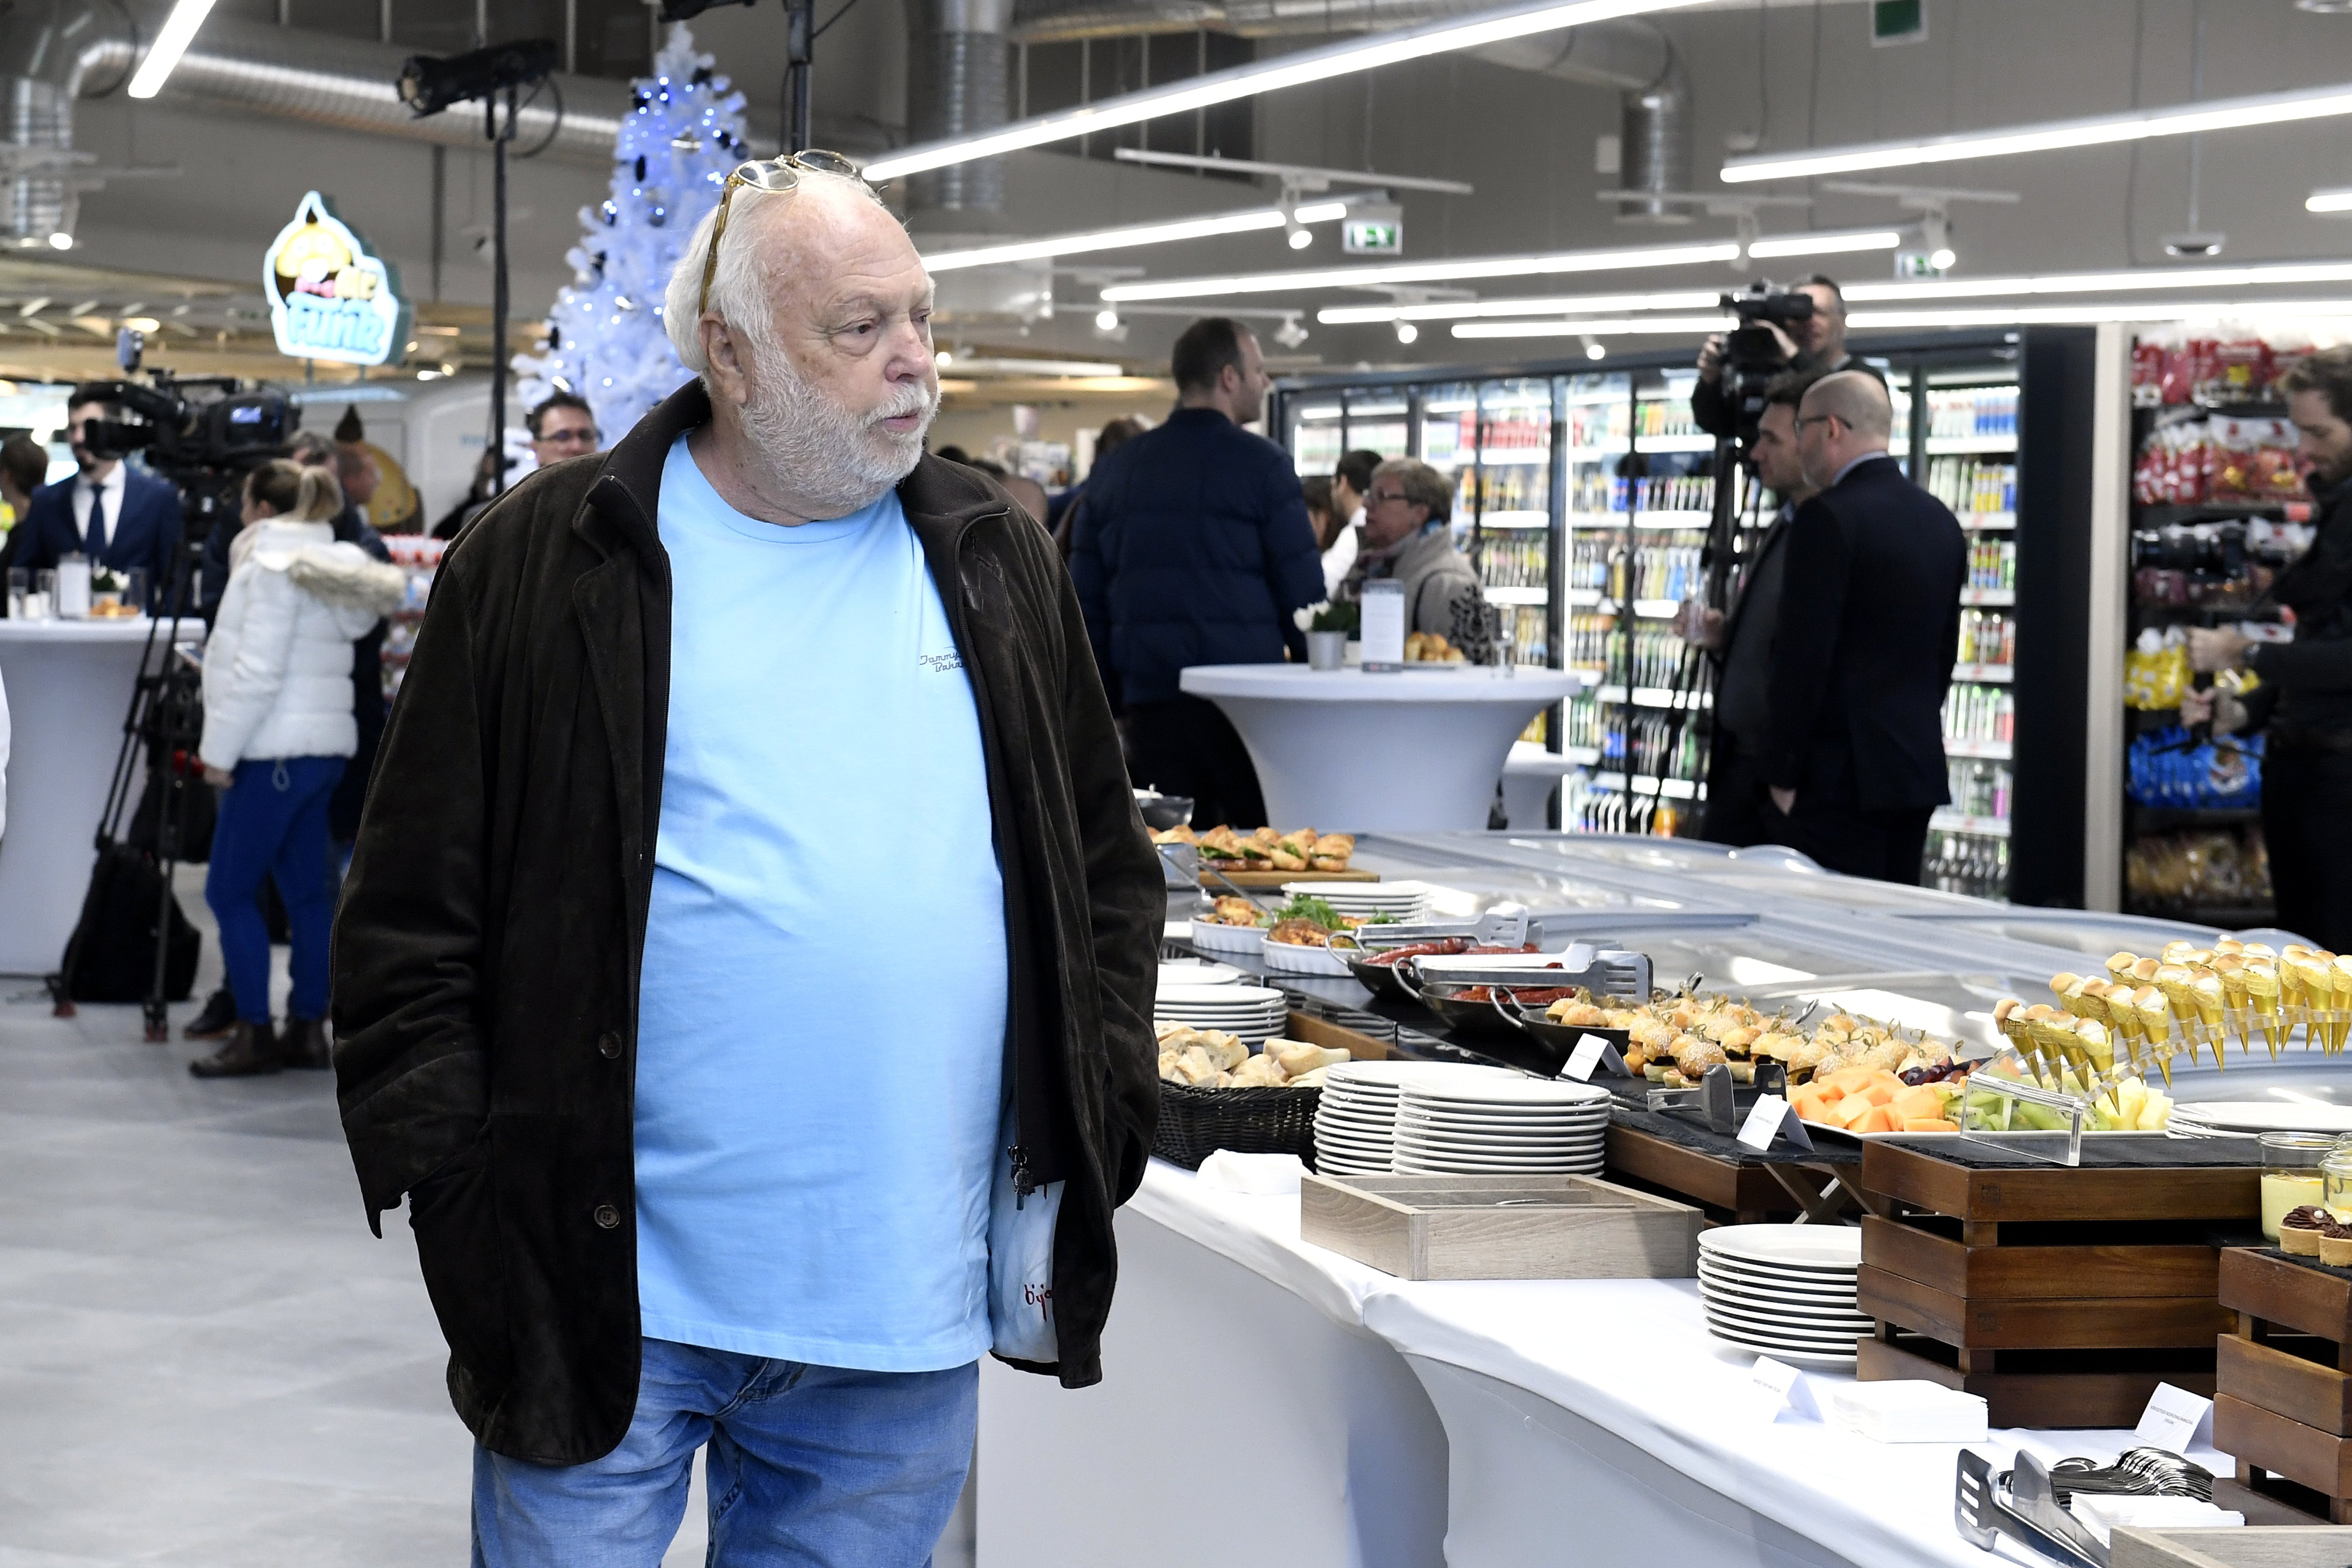 Andy Vajna, a magyar filmipar megújításáért felelős kormánybiztos a Reál Alfa szupermarket átadásán